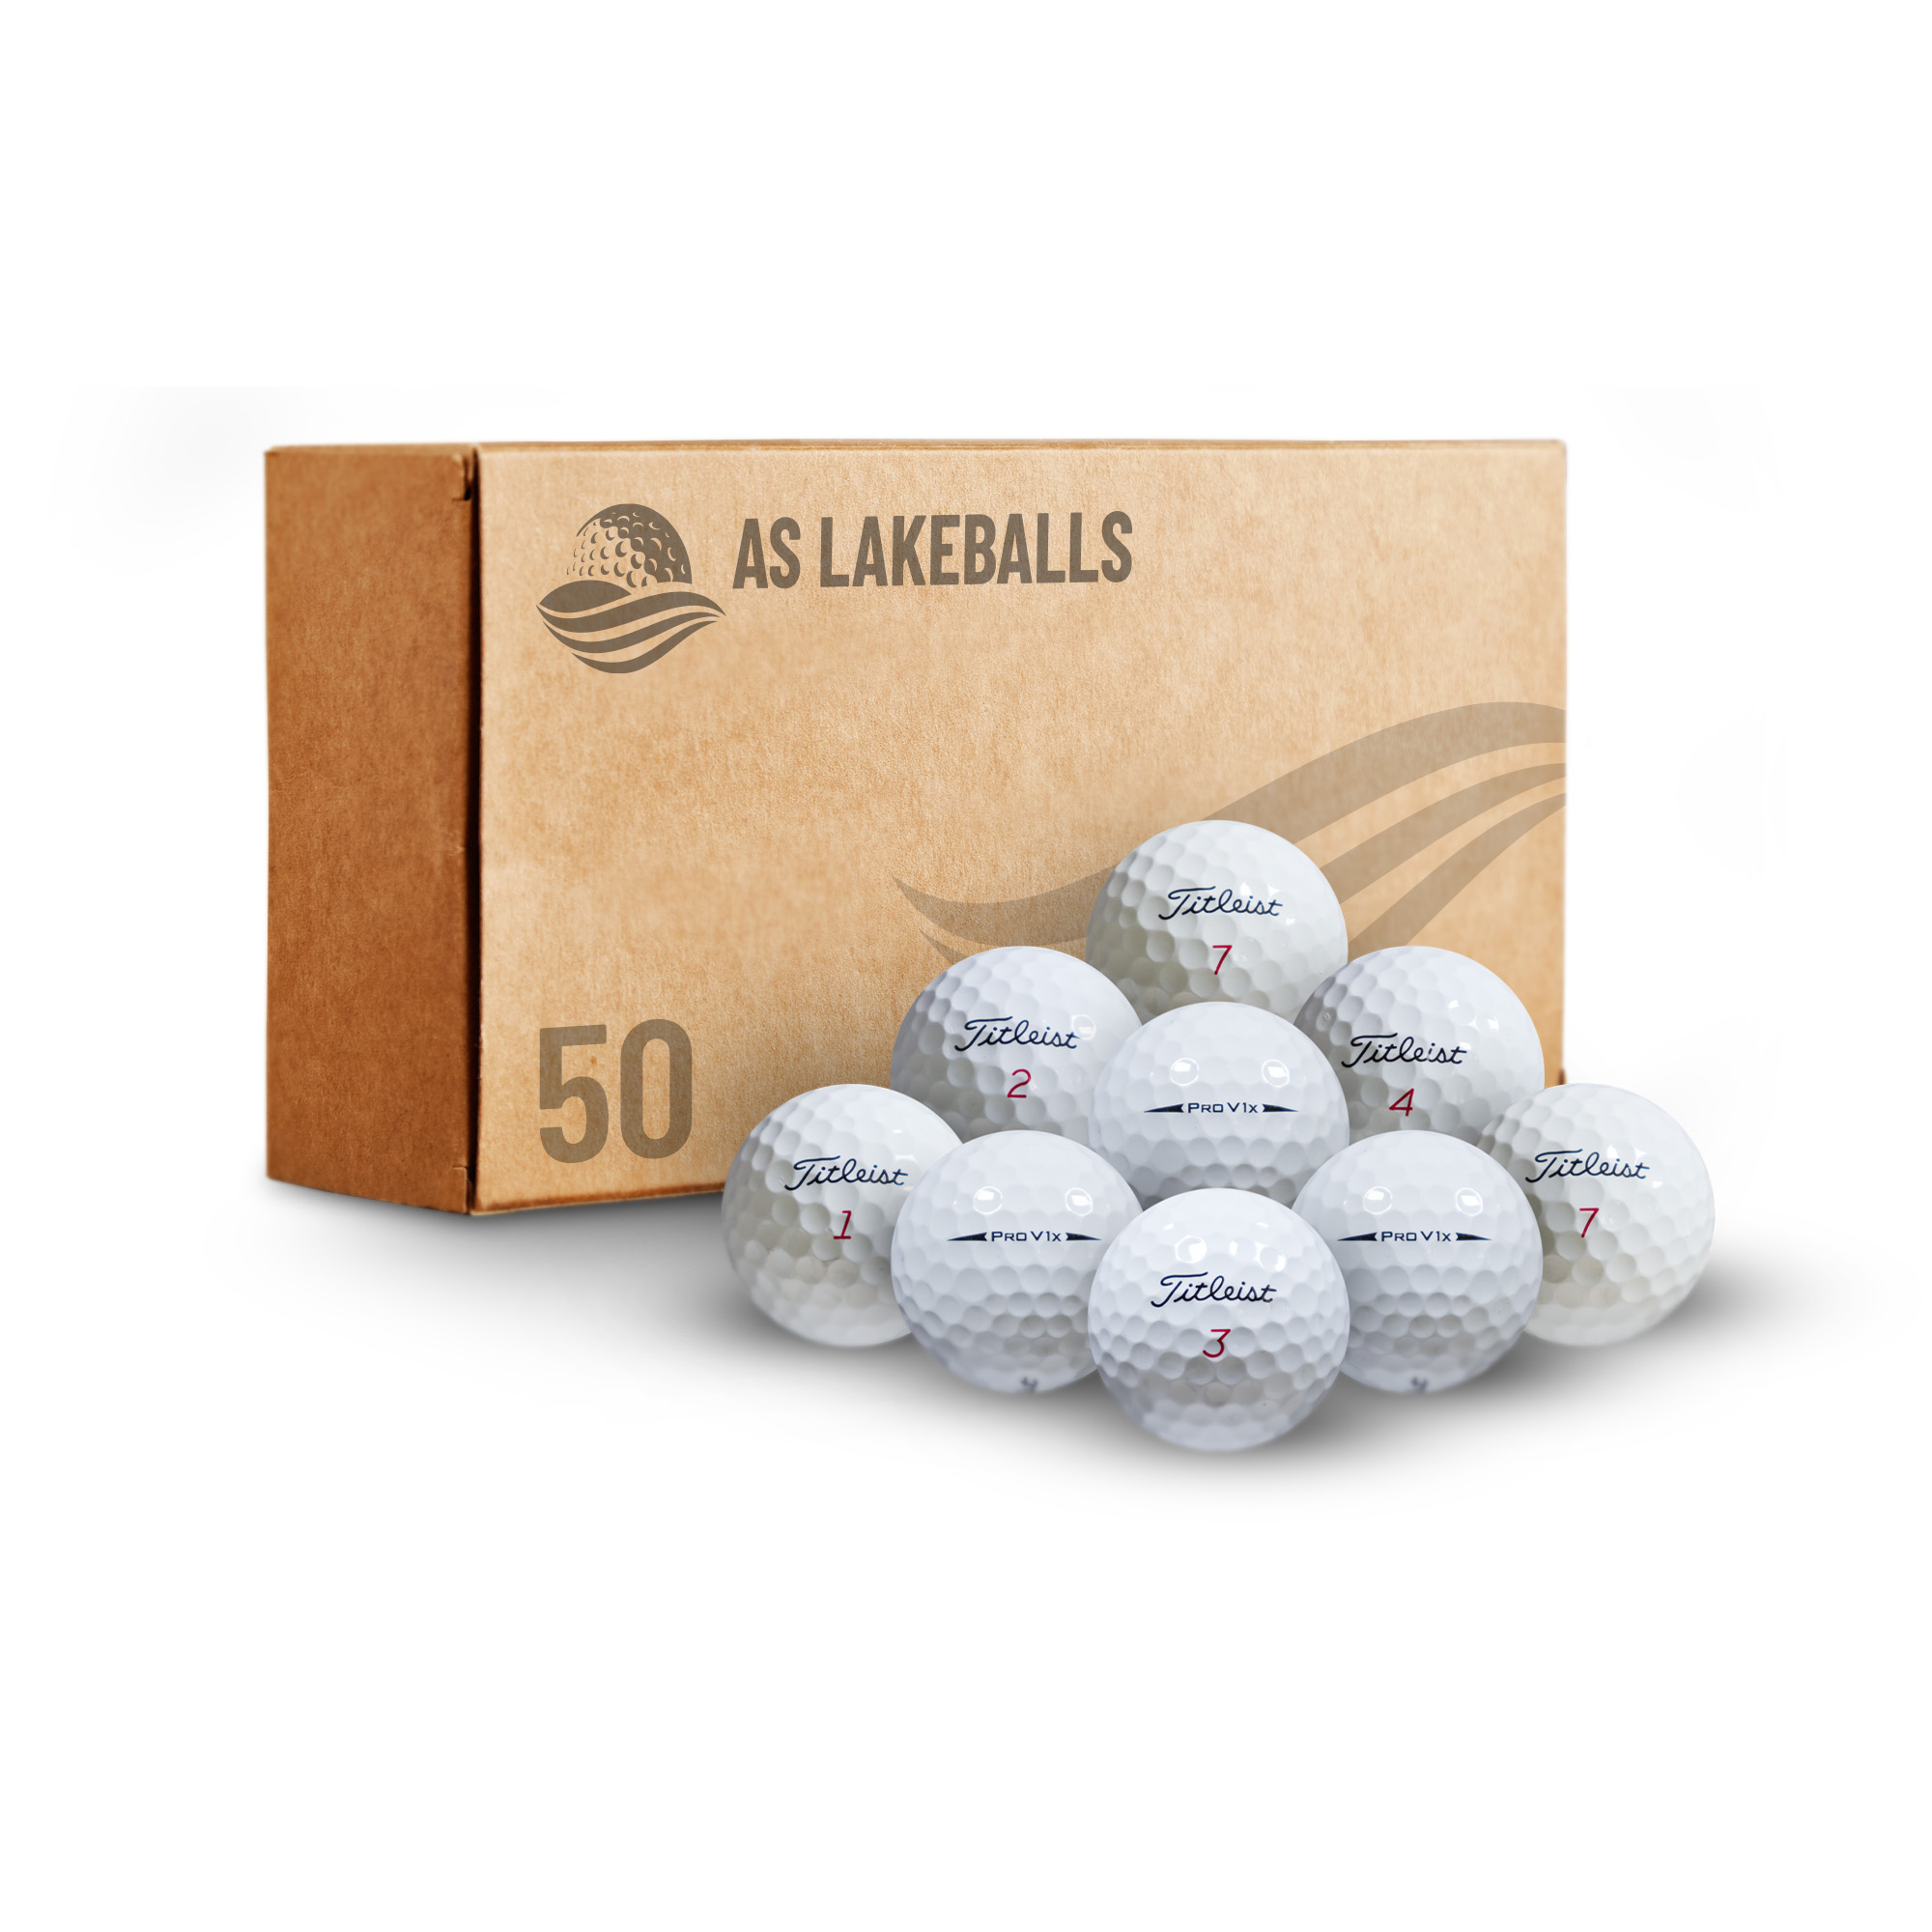 50 Titleist Pro V1 X AA bei AS Lakeballs günstig kaufen